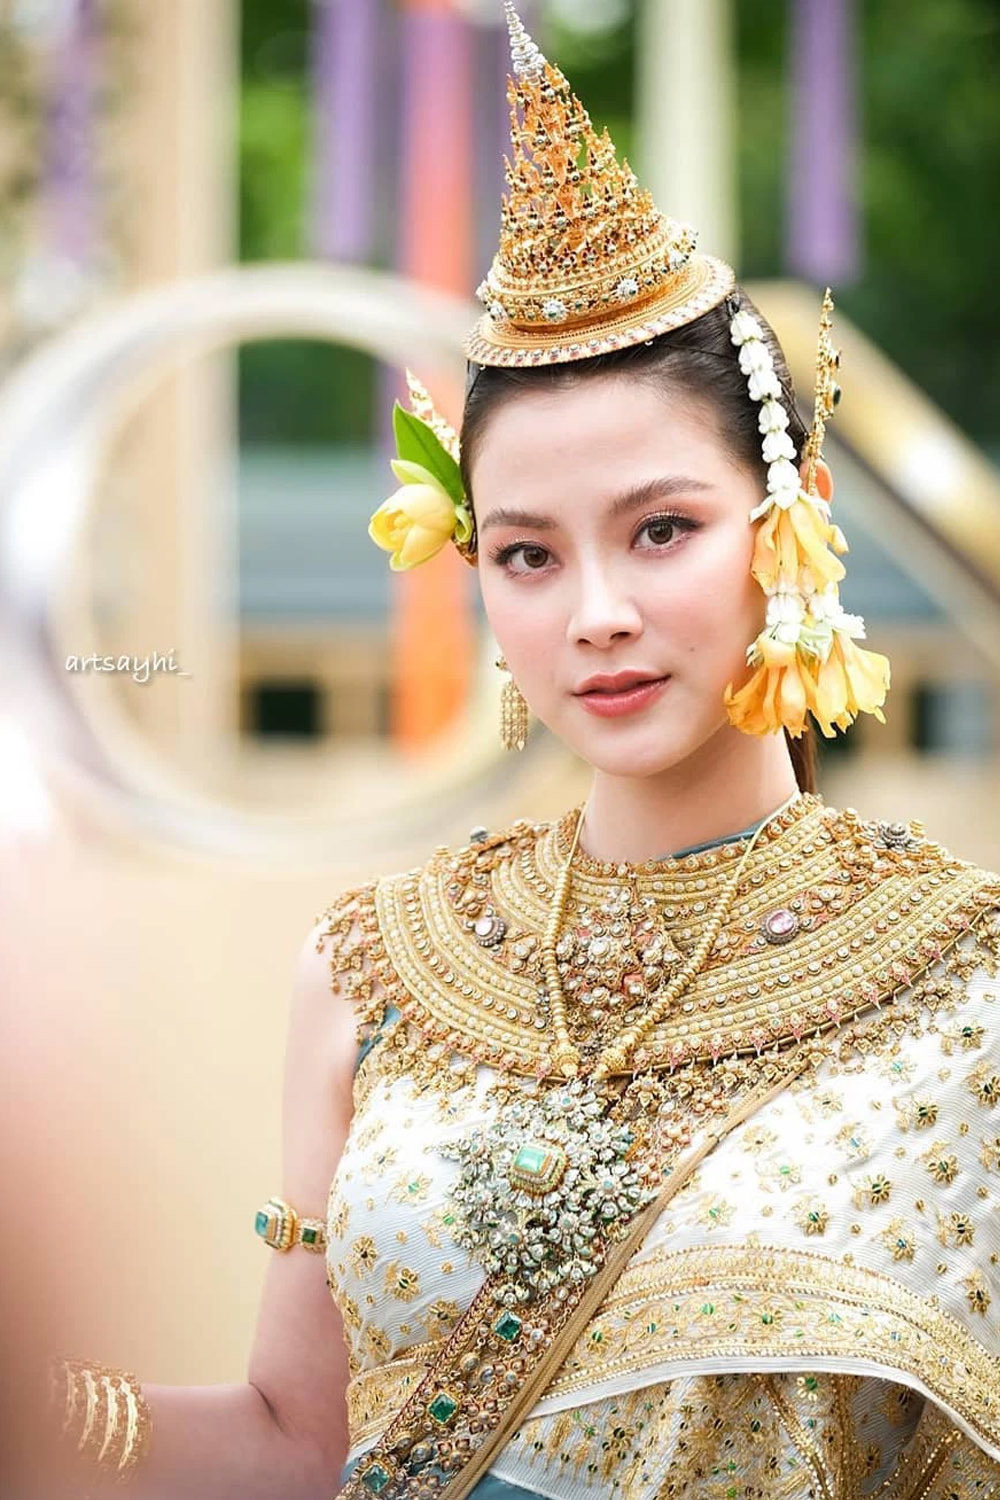 Nữ diễn viên hóa thân nữ thần tại sự kiện&nbsp;The Iconic Songkran Festival. Nét kiều diễm của cô khiến không ít người phải dành tặng những lời khen.